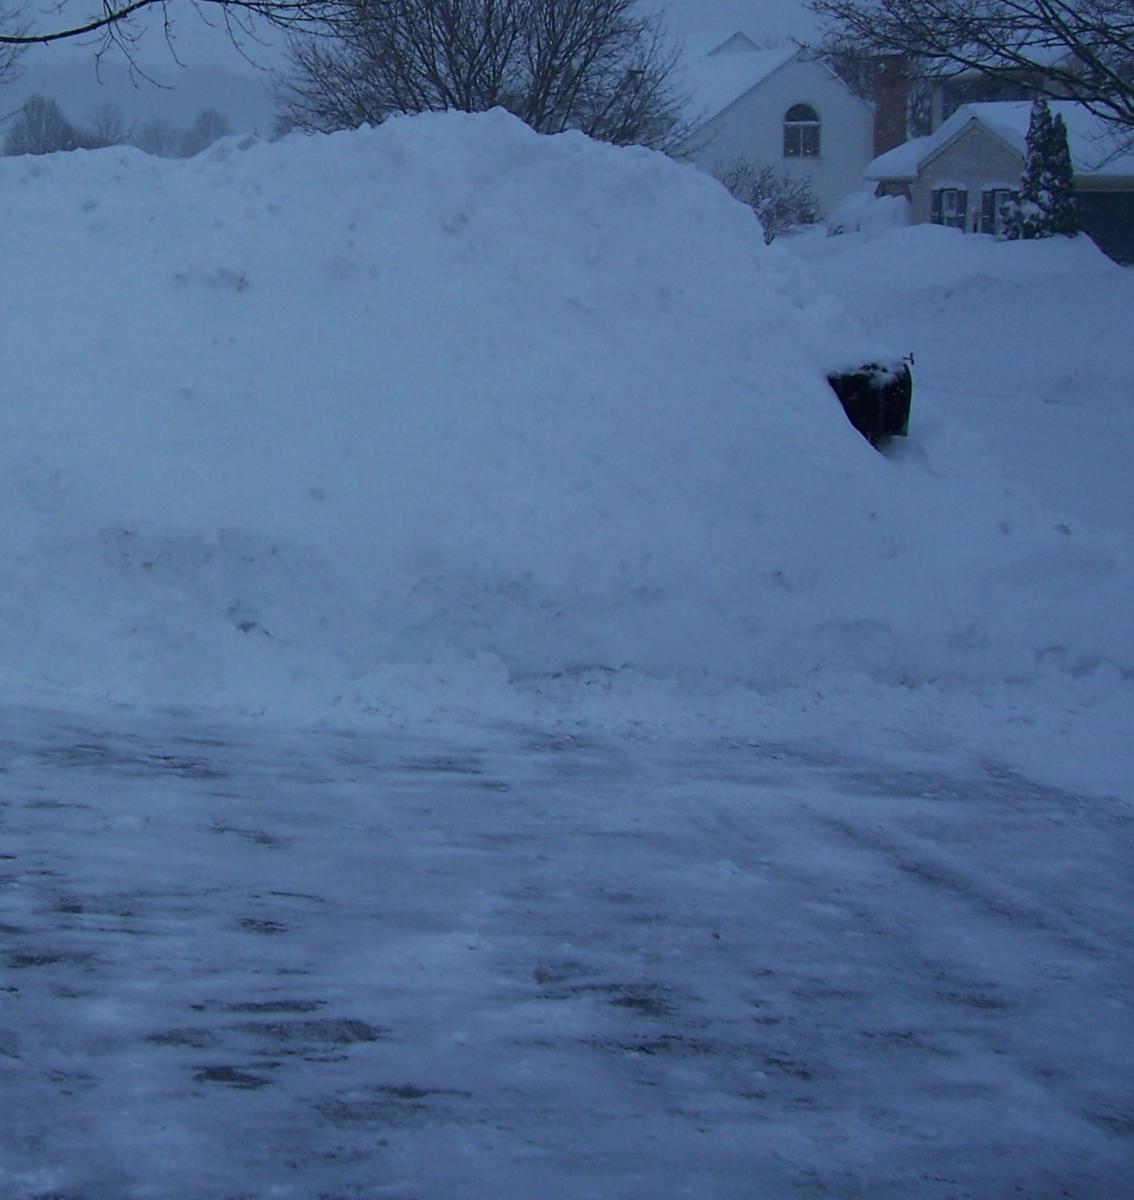 Super Deep Snow 2: Feb. 2010